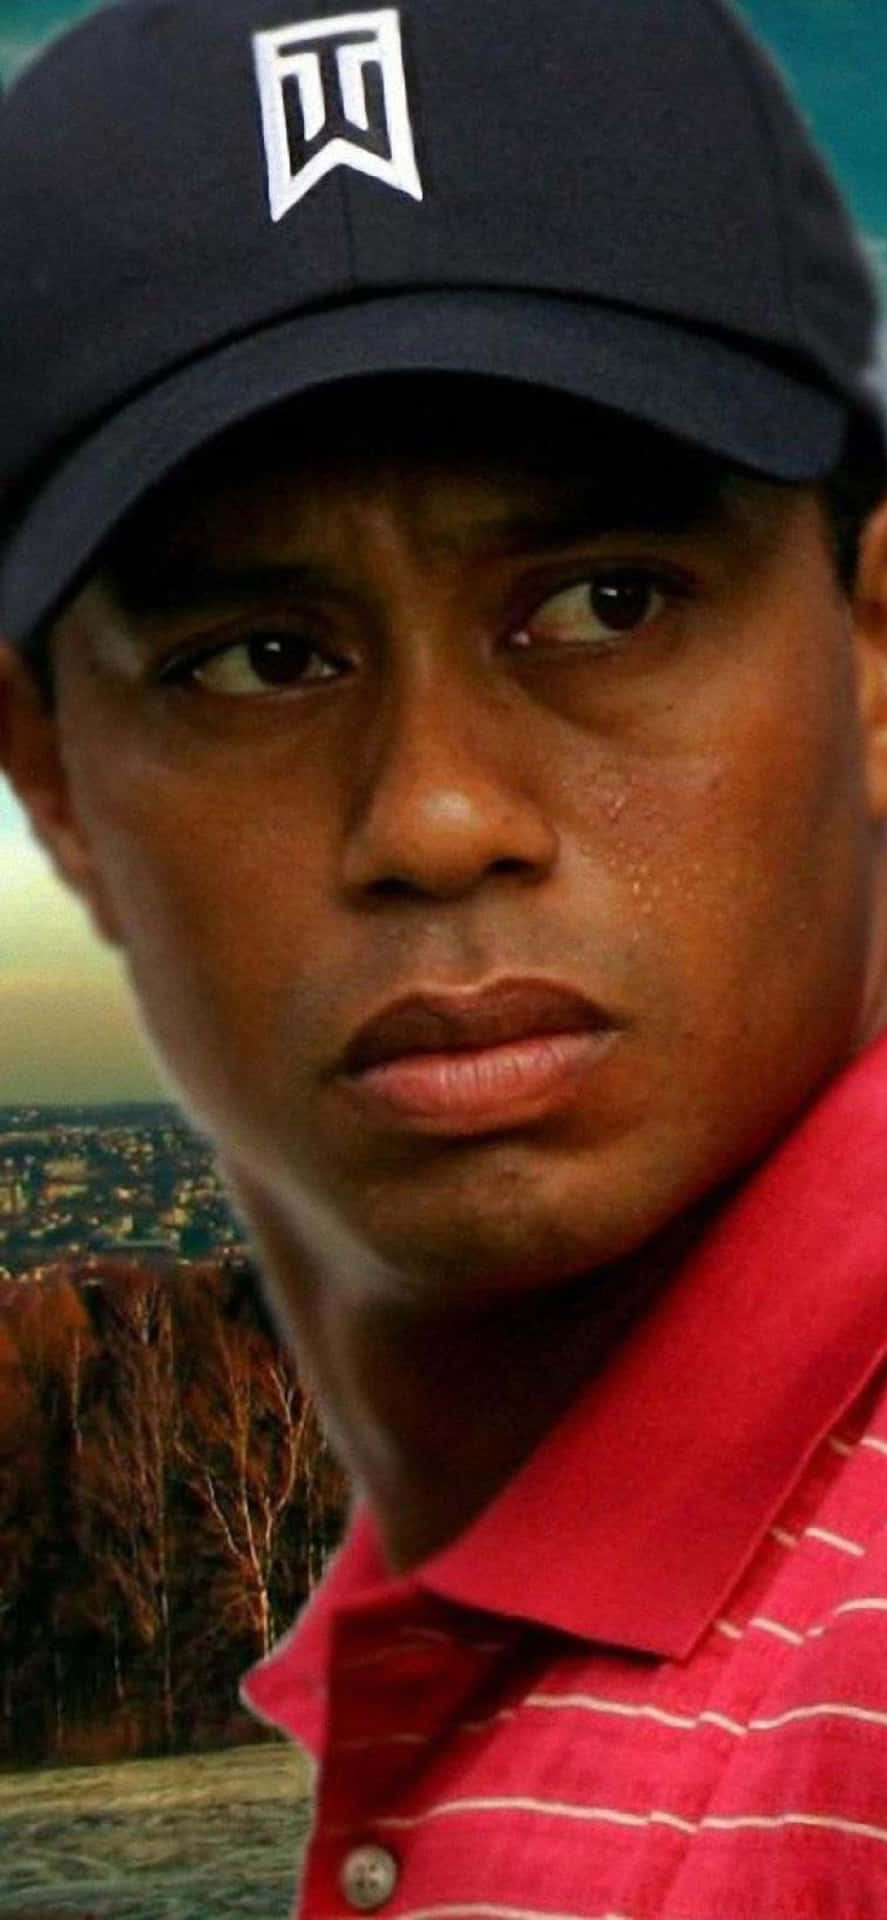 Erhaltensie Aktuelle Nachrichten Über Den Golfspieler Tiger Woods Mit Der Tiger Woods Iphone-app. Wallpaper